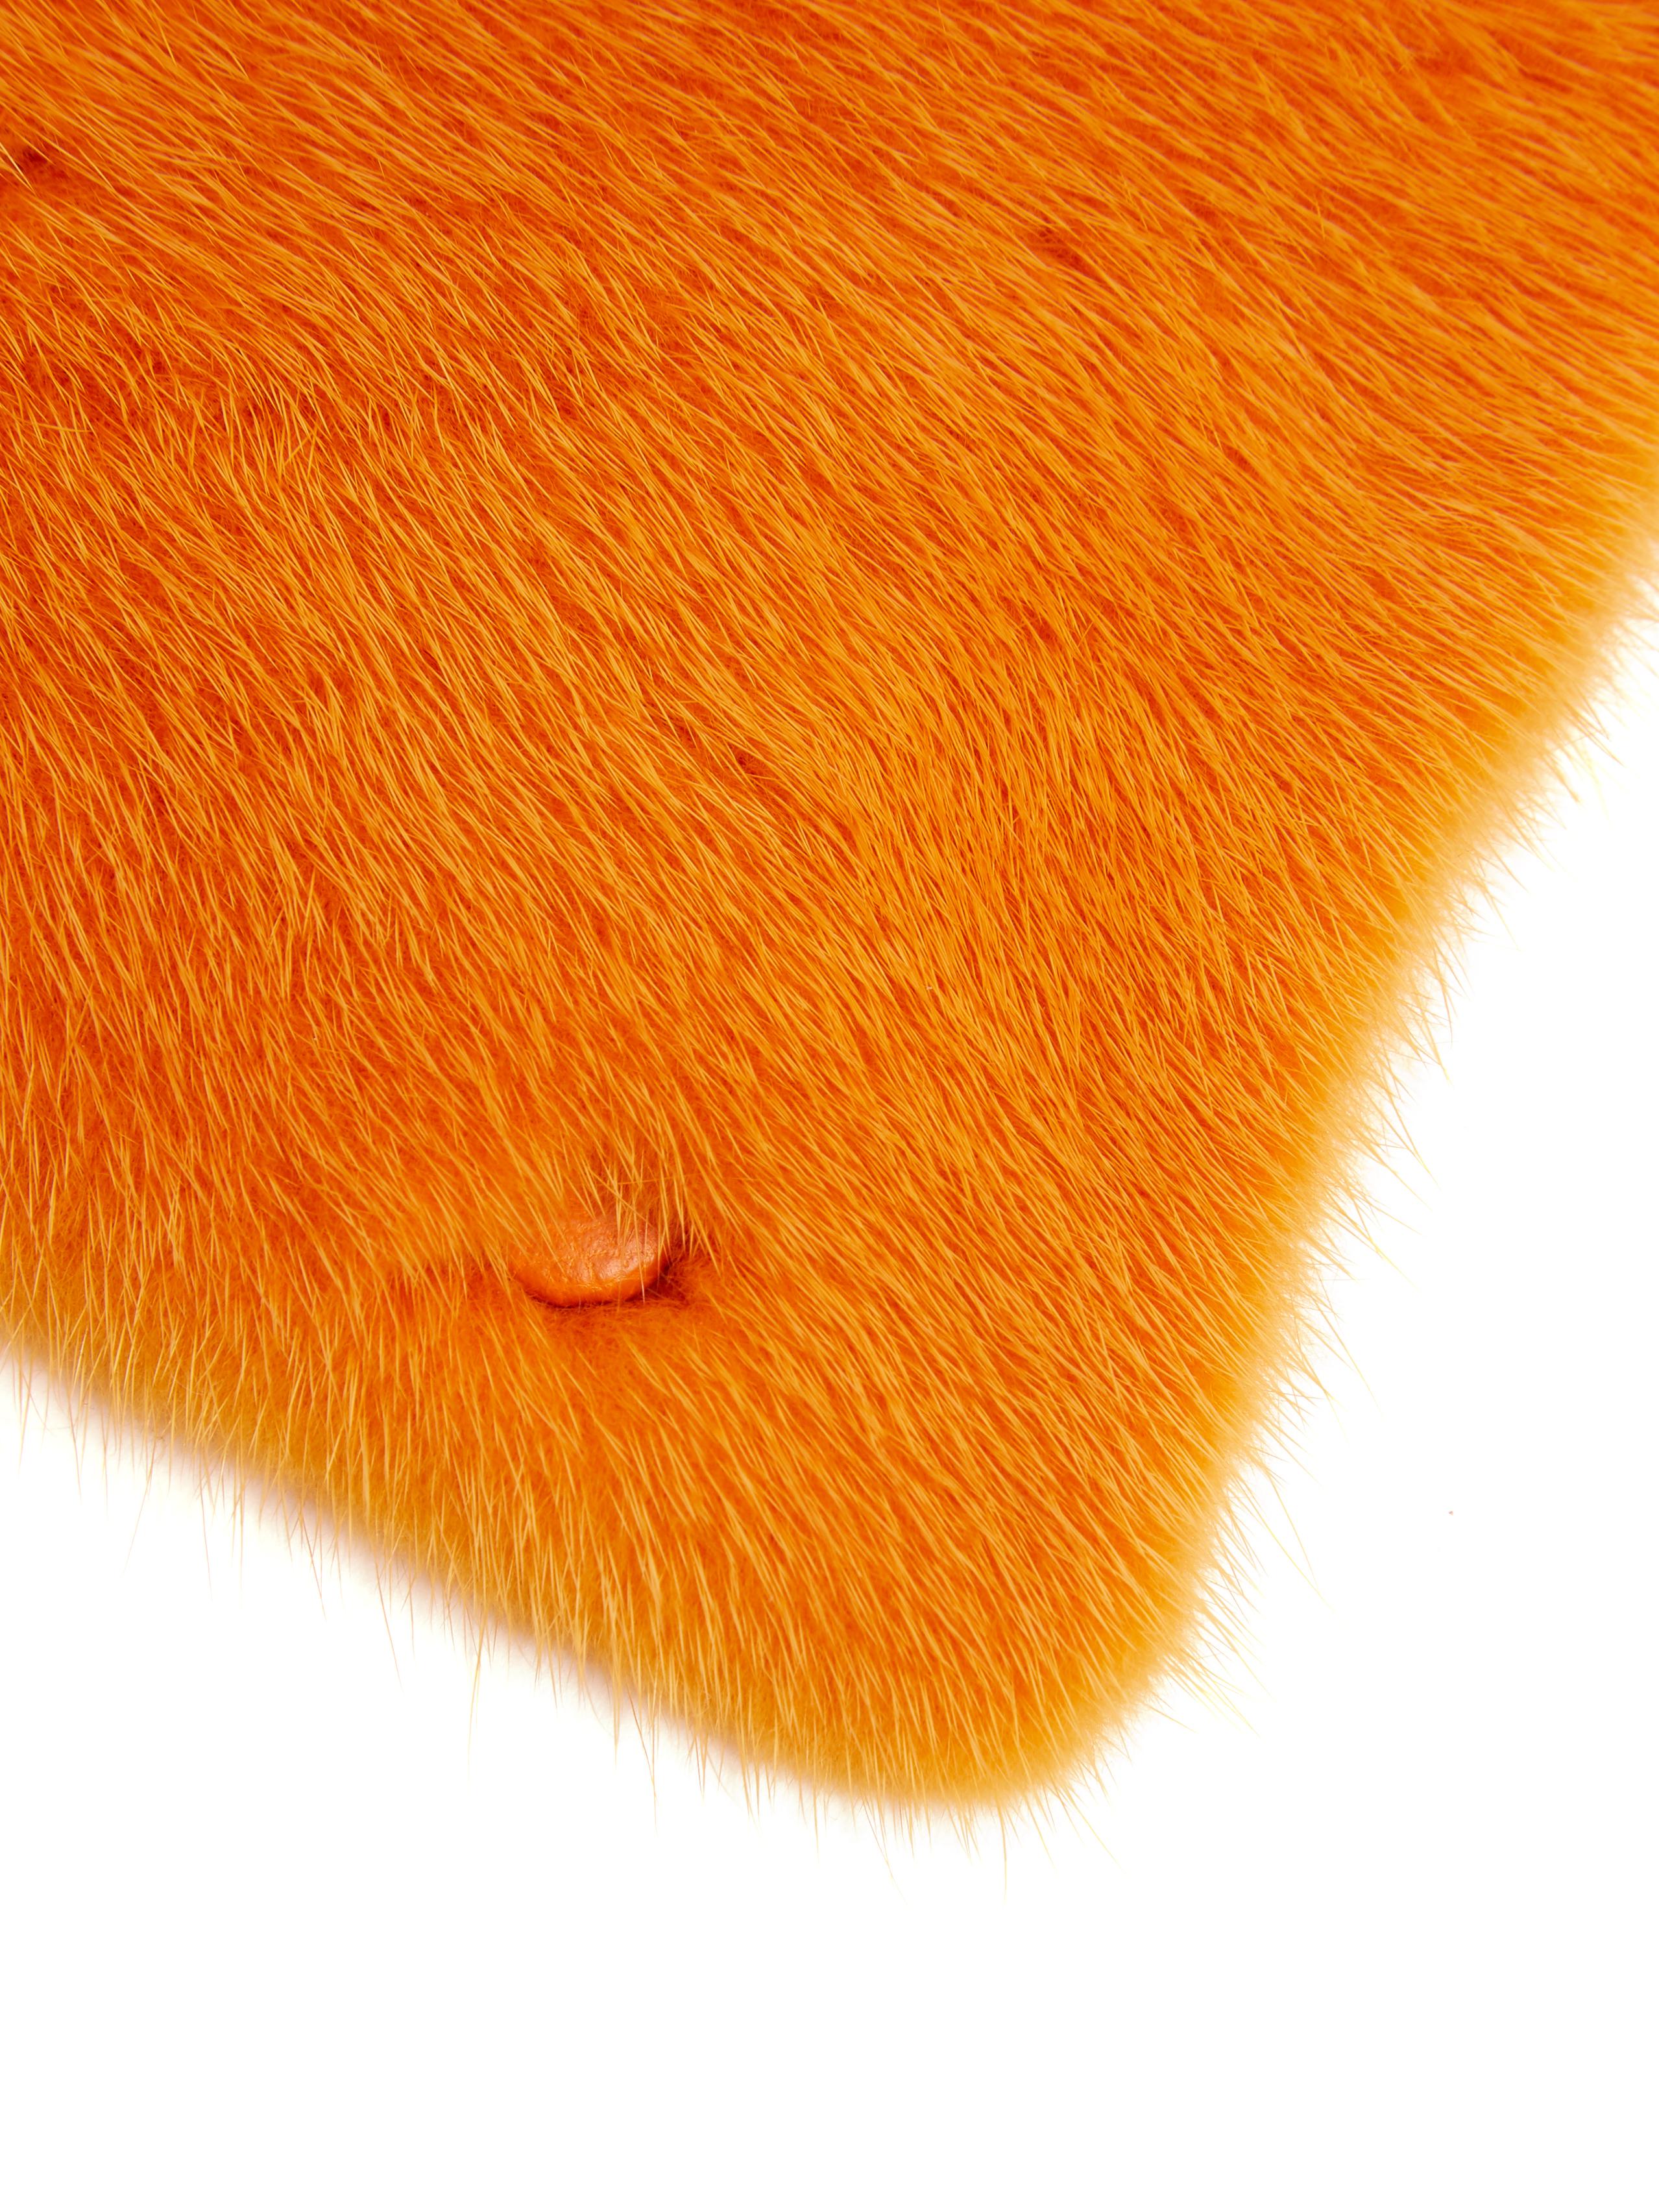 Valextra Iside Mink-fur Bag Strap Cover in Orange